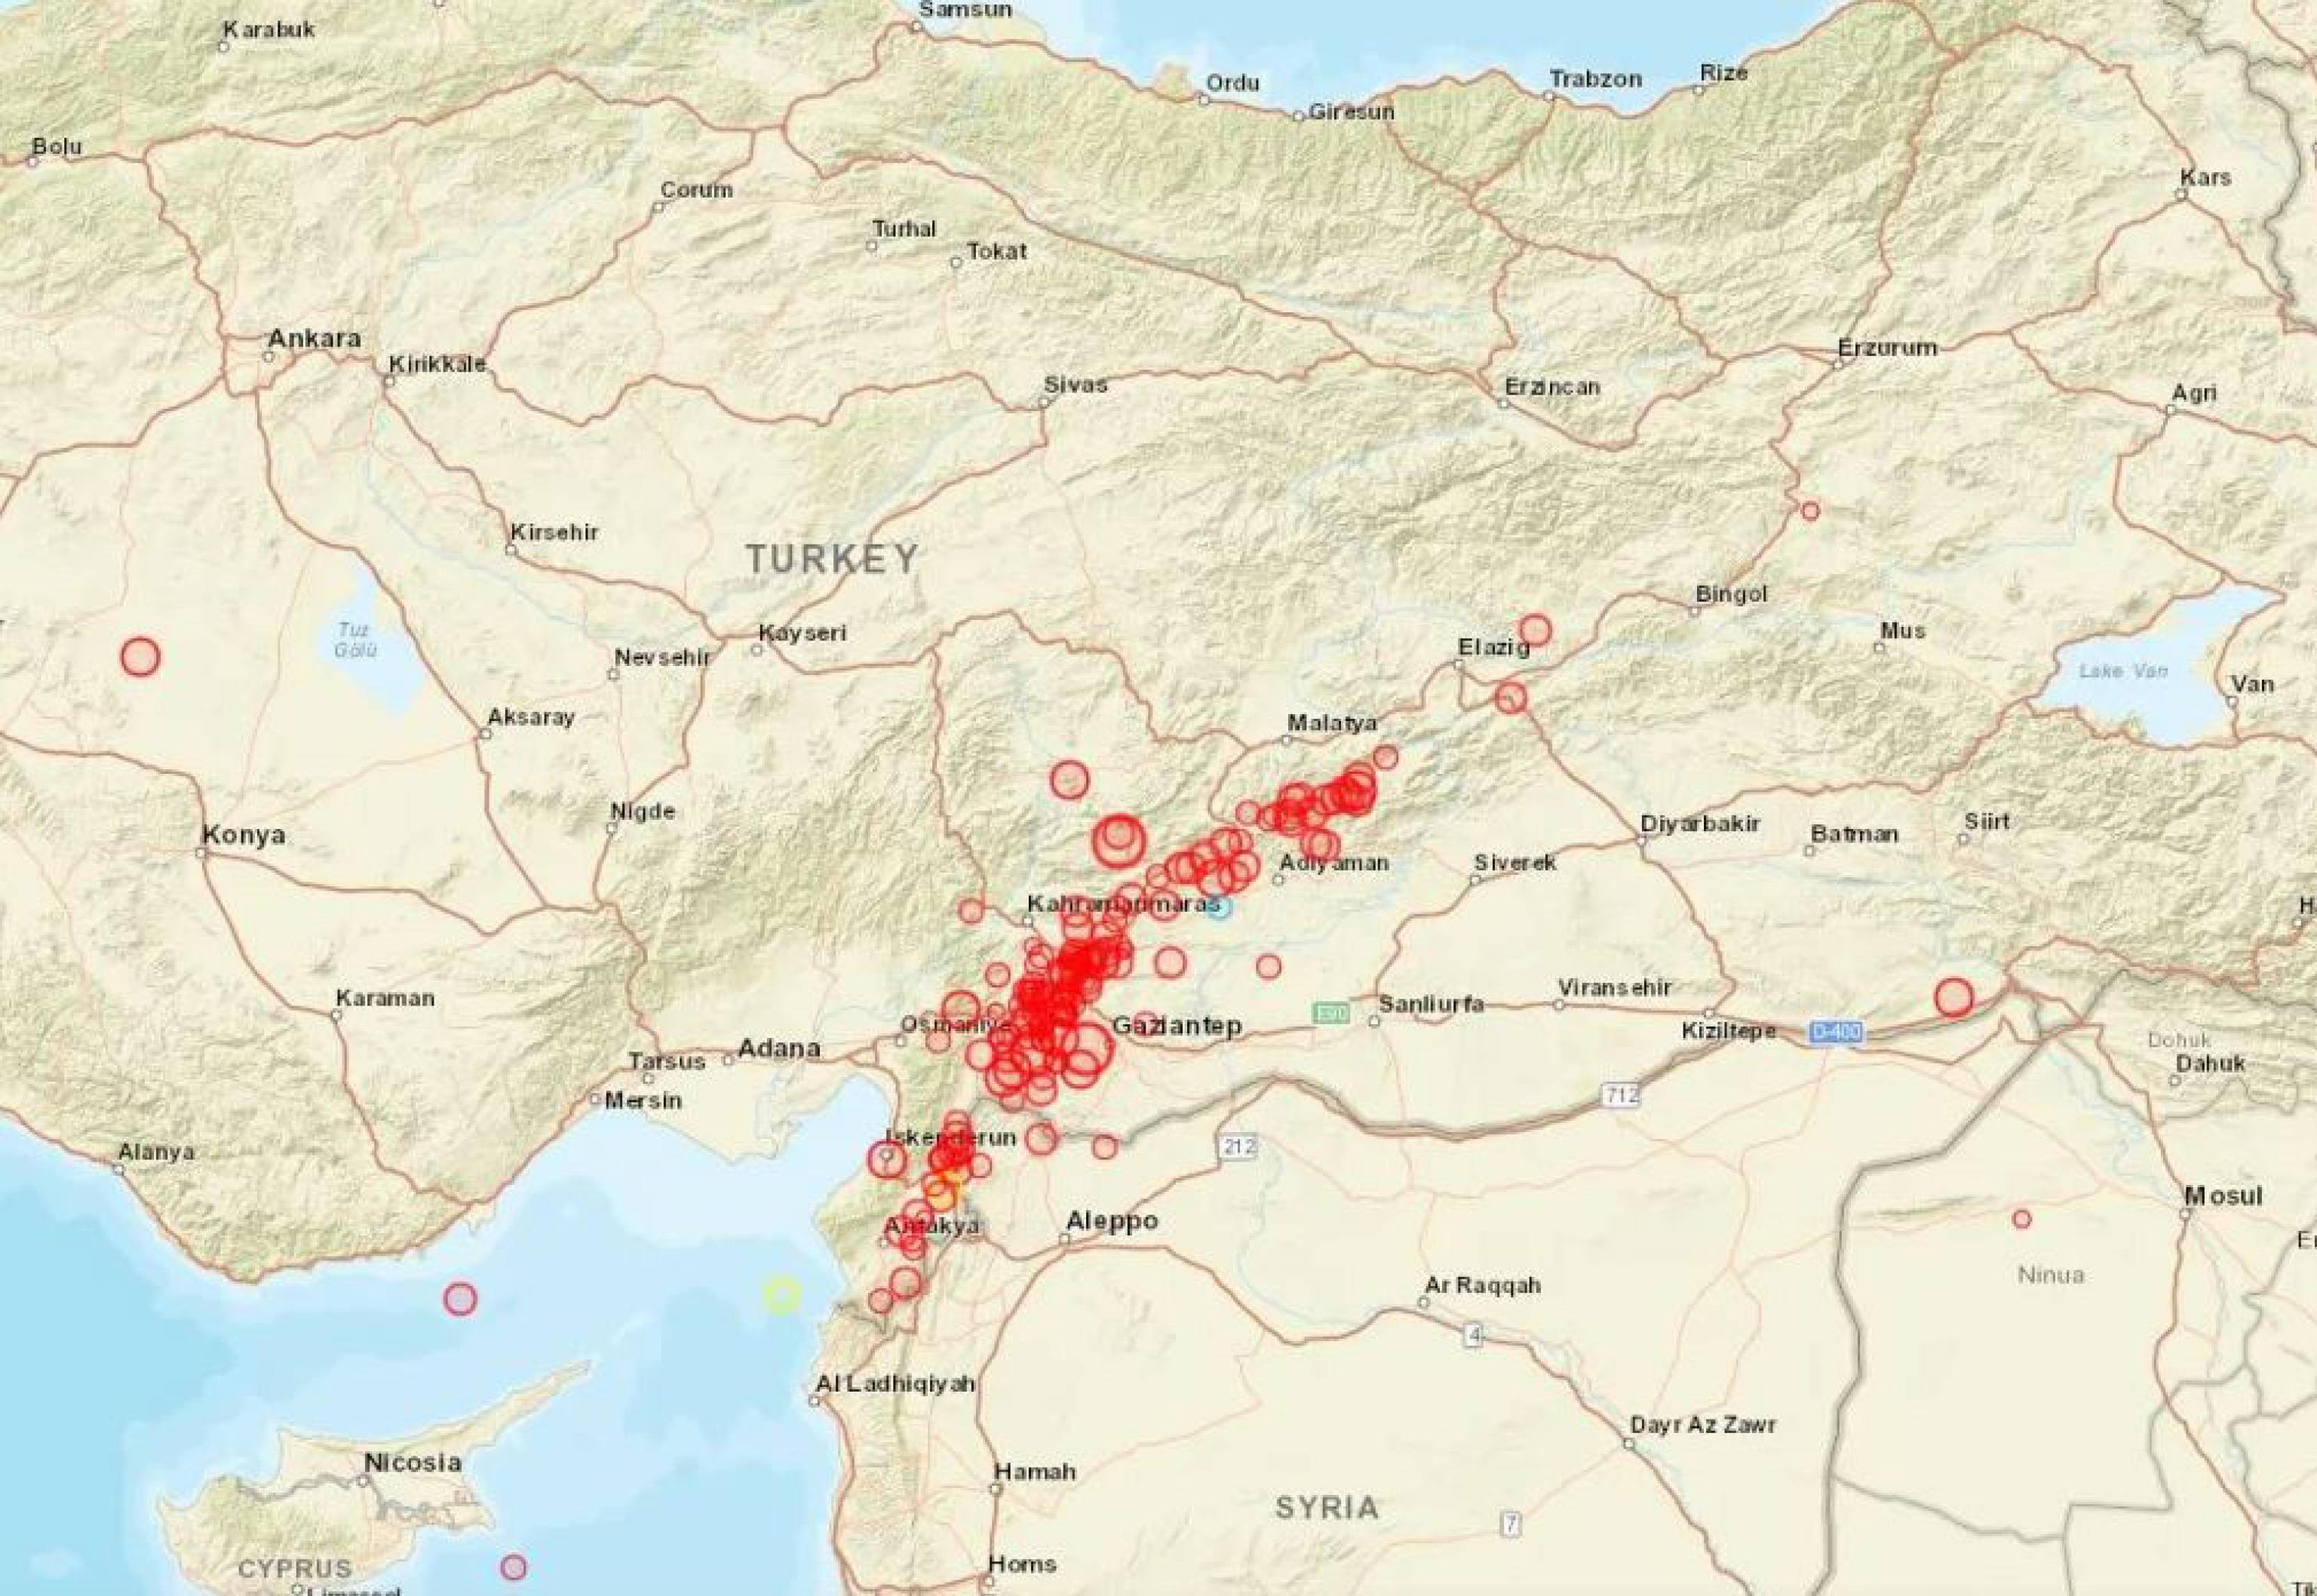 La cartina dell'Ingv mostra gli eventi sismici in Turchia del 6 febbraio 2023.
TWITTER/ INGVterremoti
+++ ATTENZIONE LA FOTO NON PUO' ESSERE PUBBLICATA O RIPRODOTTA SENZA L'AUTORIZZAZIONE DELLA FONTE DI ORIGINE CUI SI RINVIA +++ NPK +++